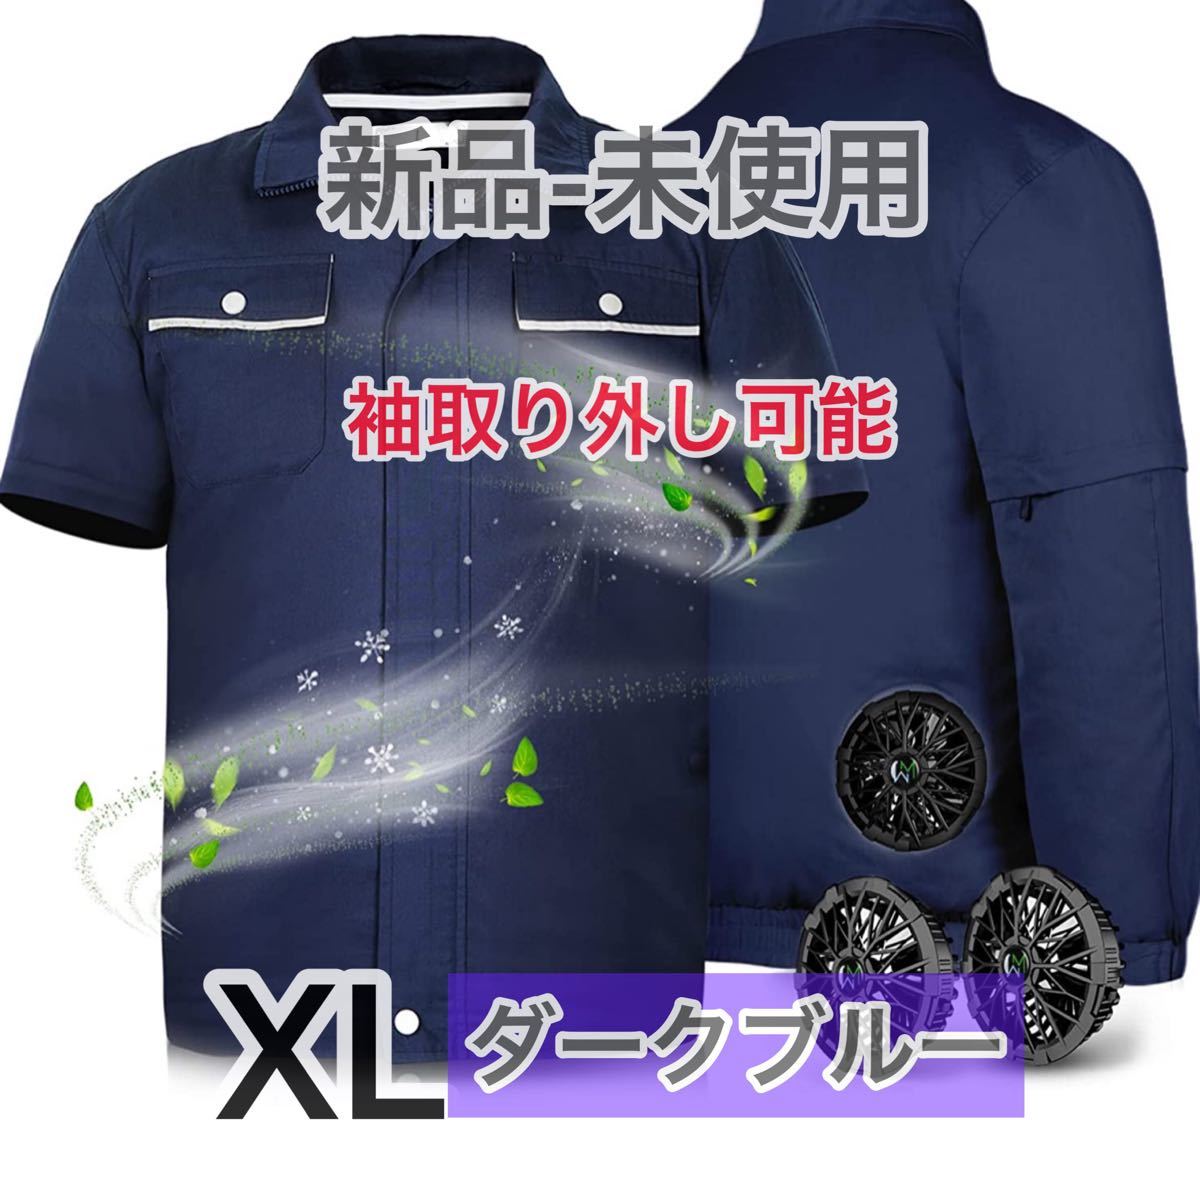 新品 長袖半袖兼用 ファン付き 空調作業服 ダークブルー 2XL-